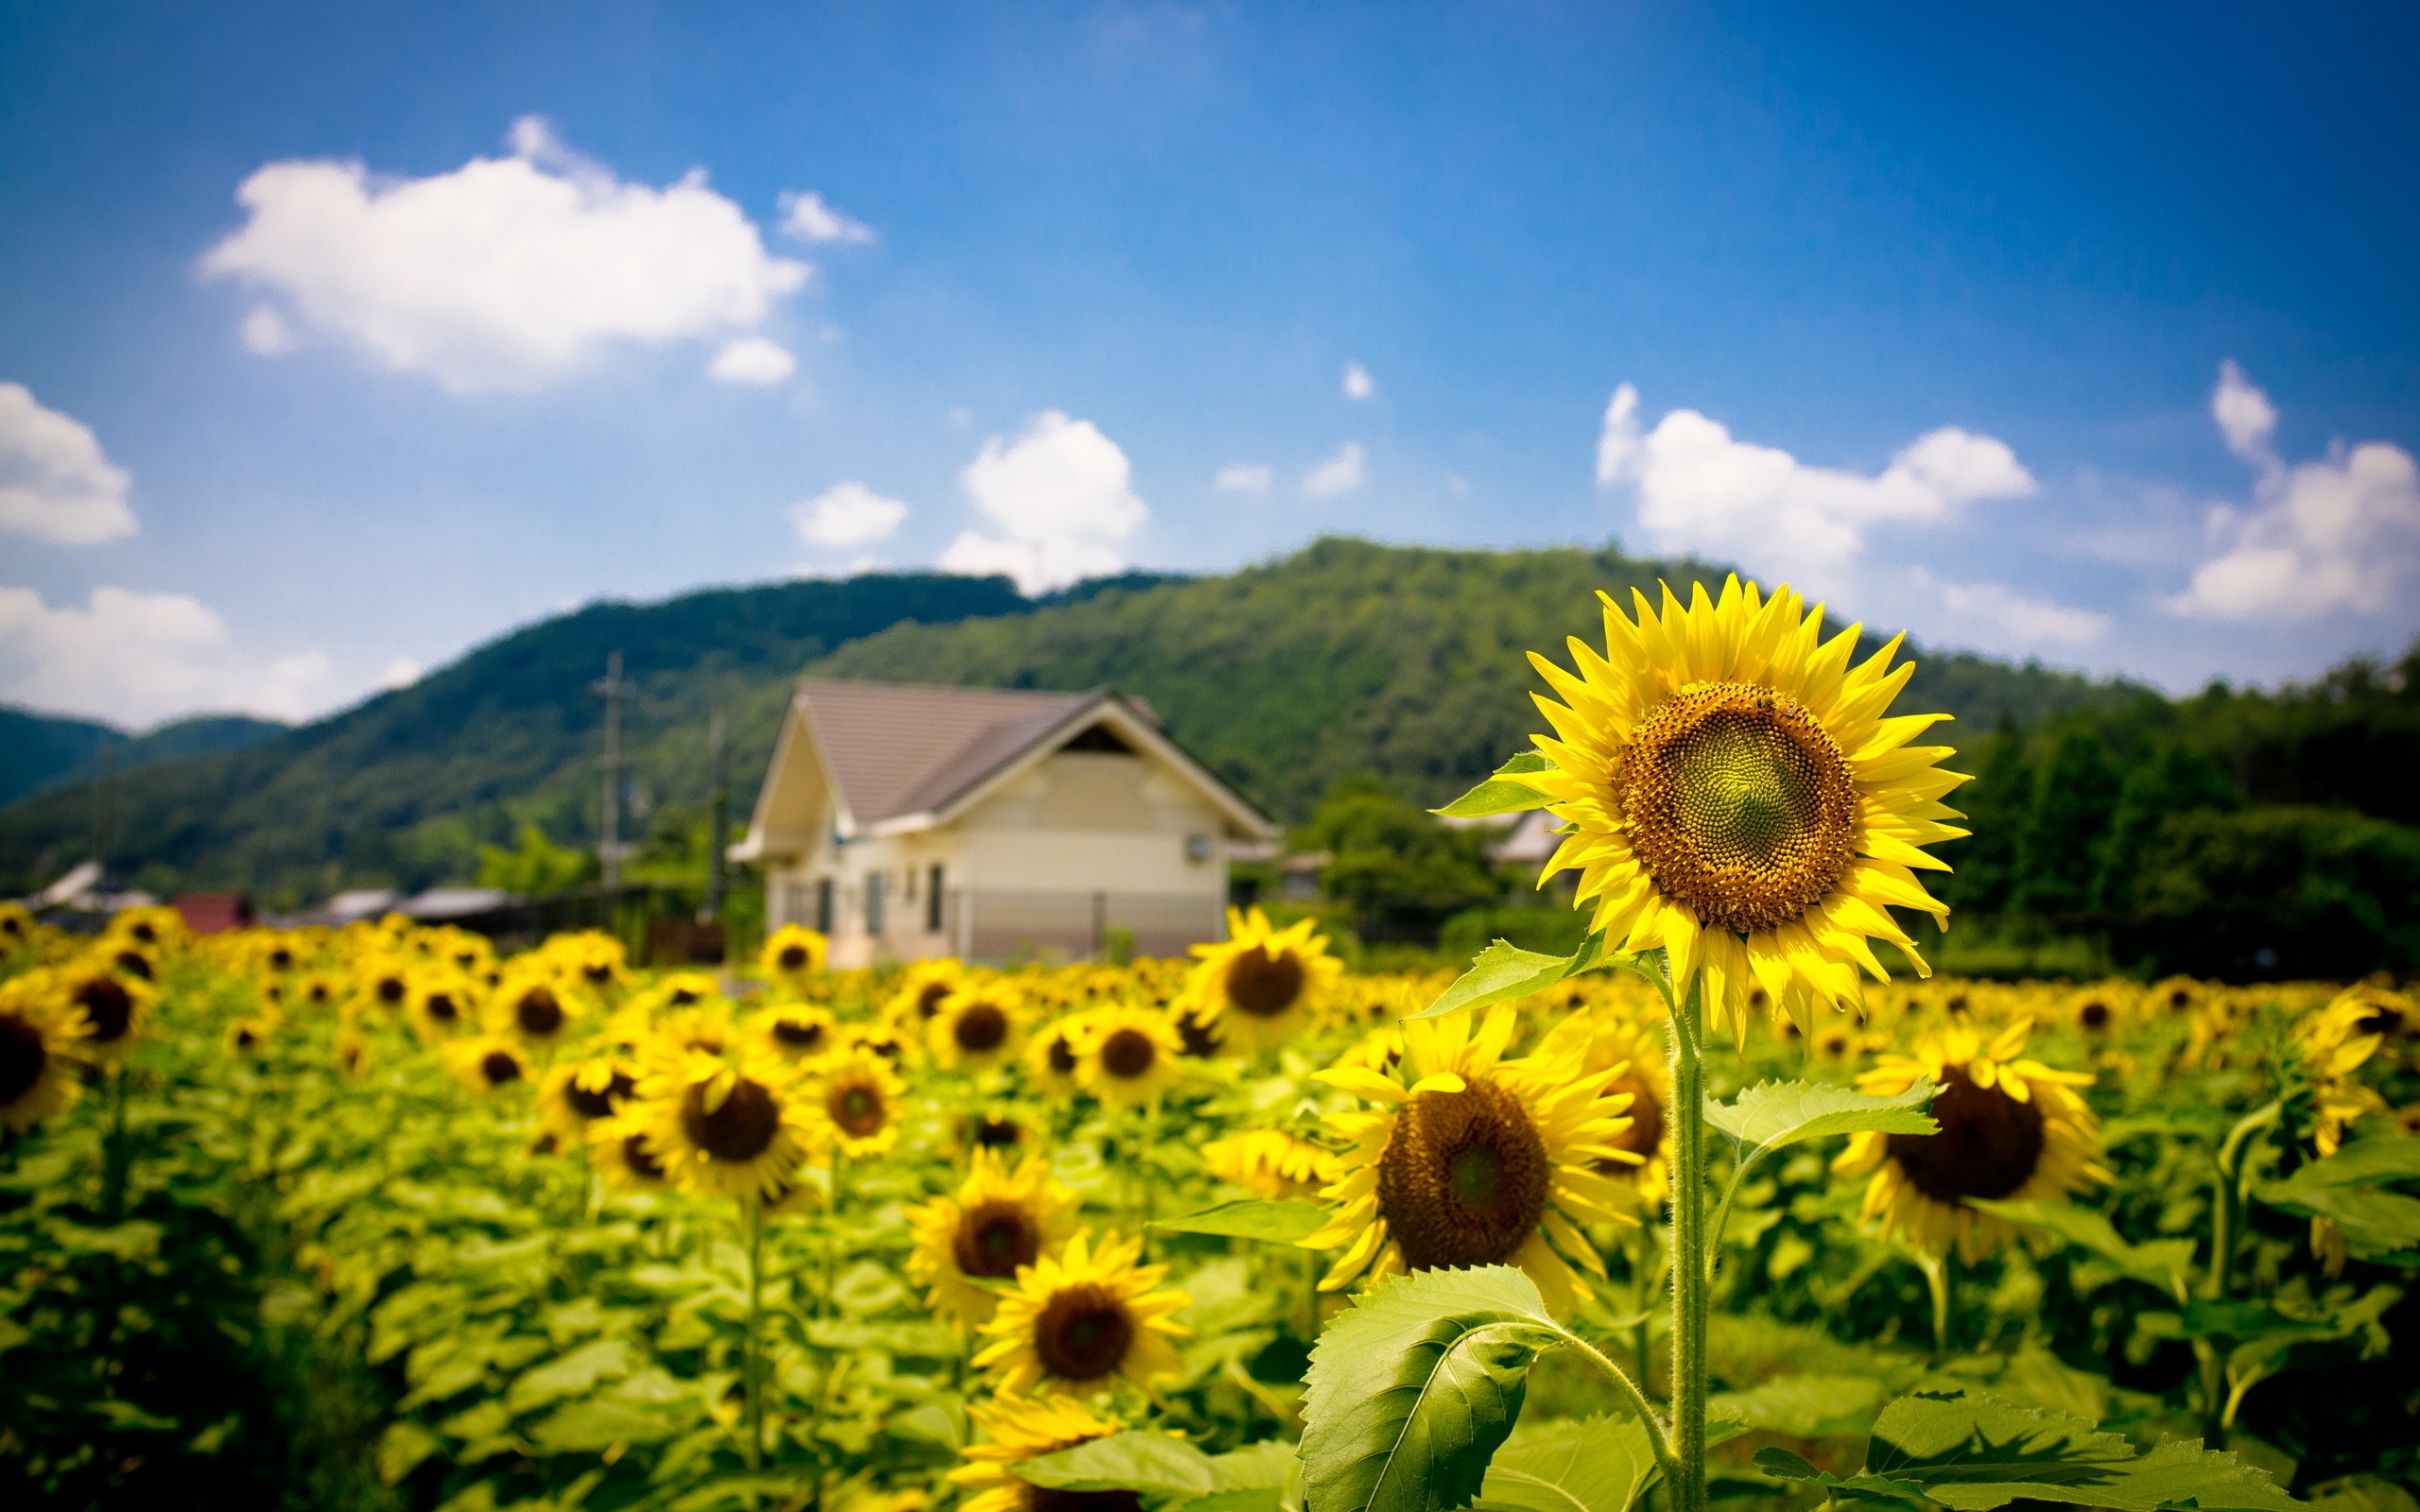 Sunflower Land for 2560 x 1600 widescreen resolution